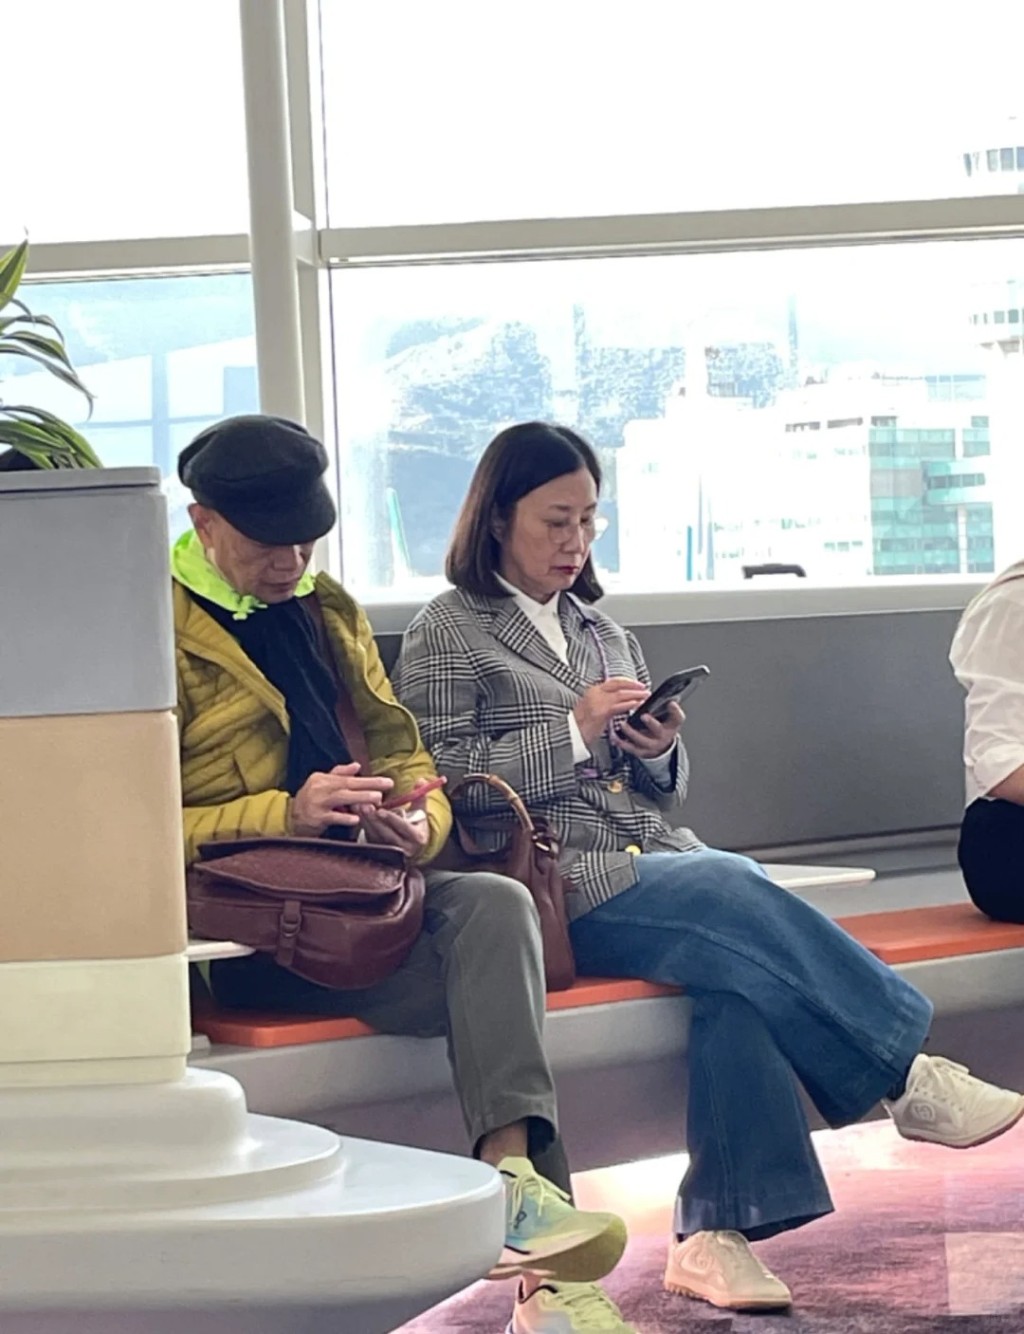 日前有網民分享羅家英與汪明荃在機場的照片。